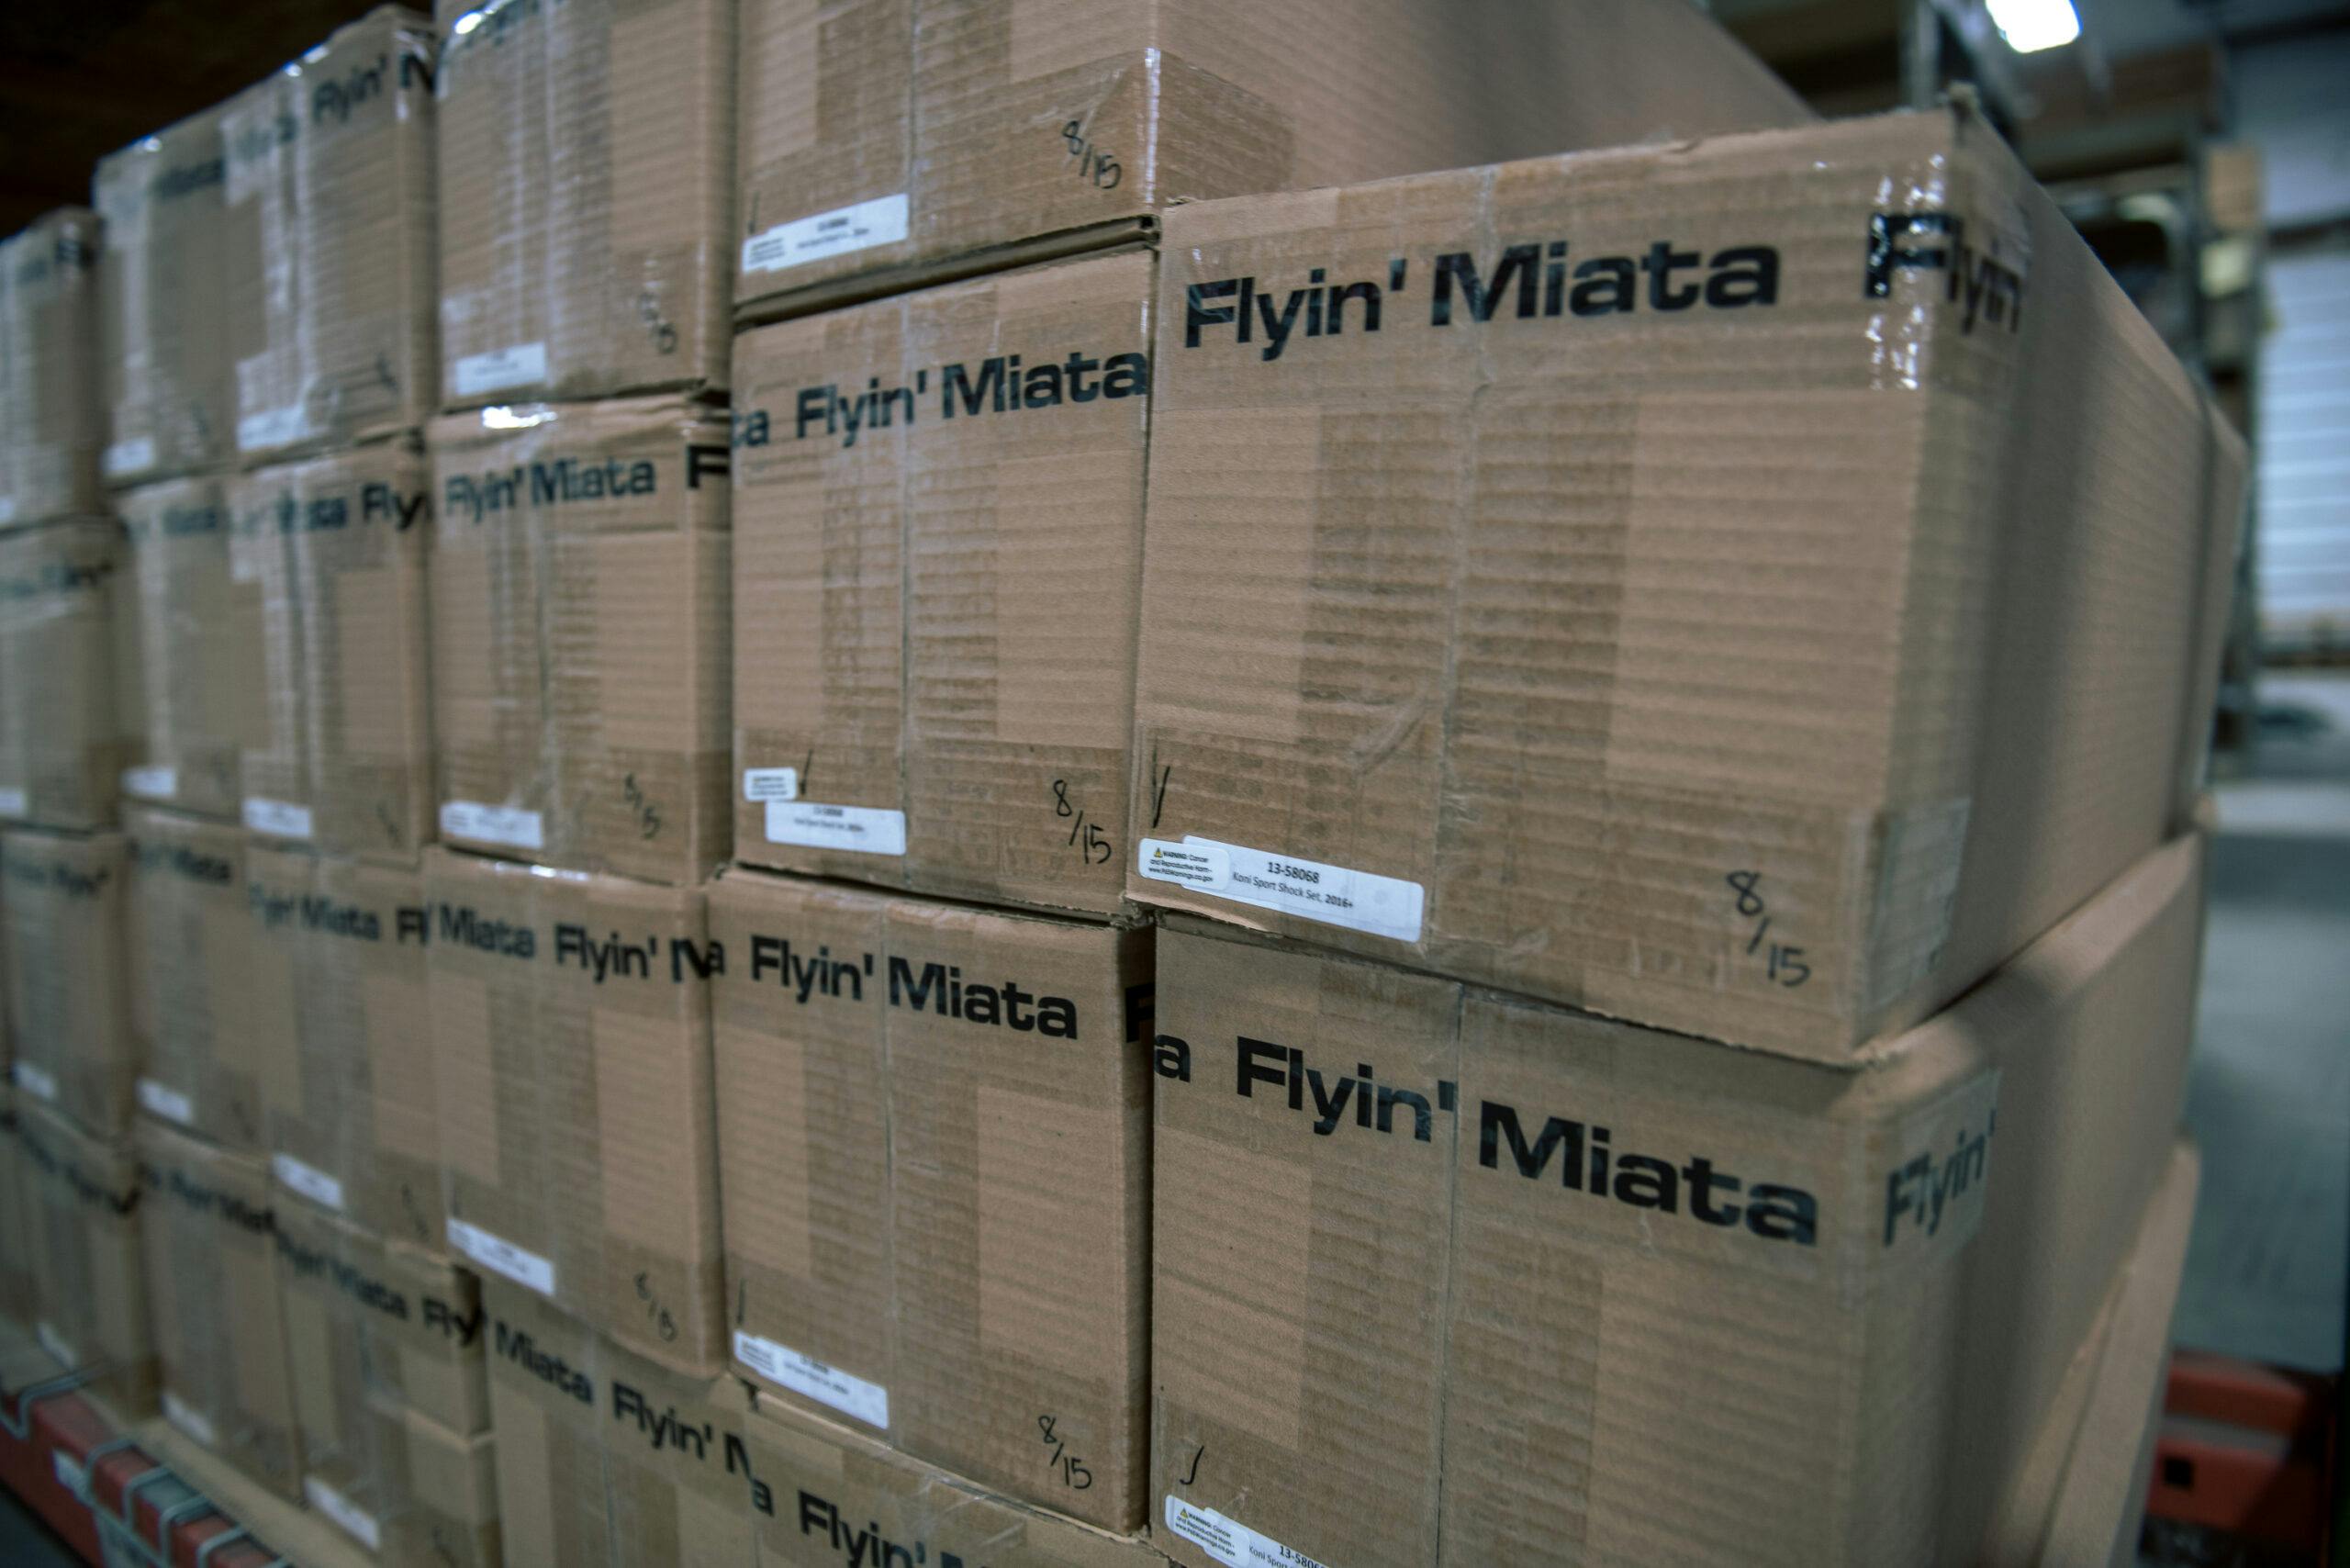 Flyin Miata boxes